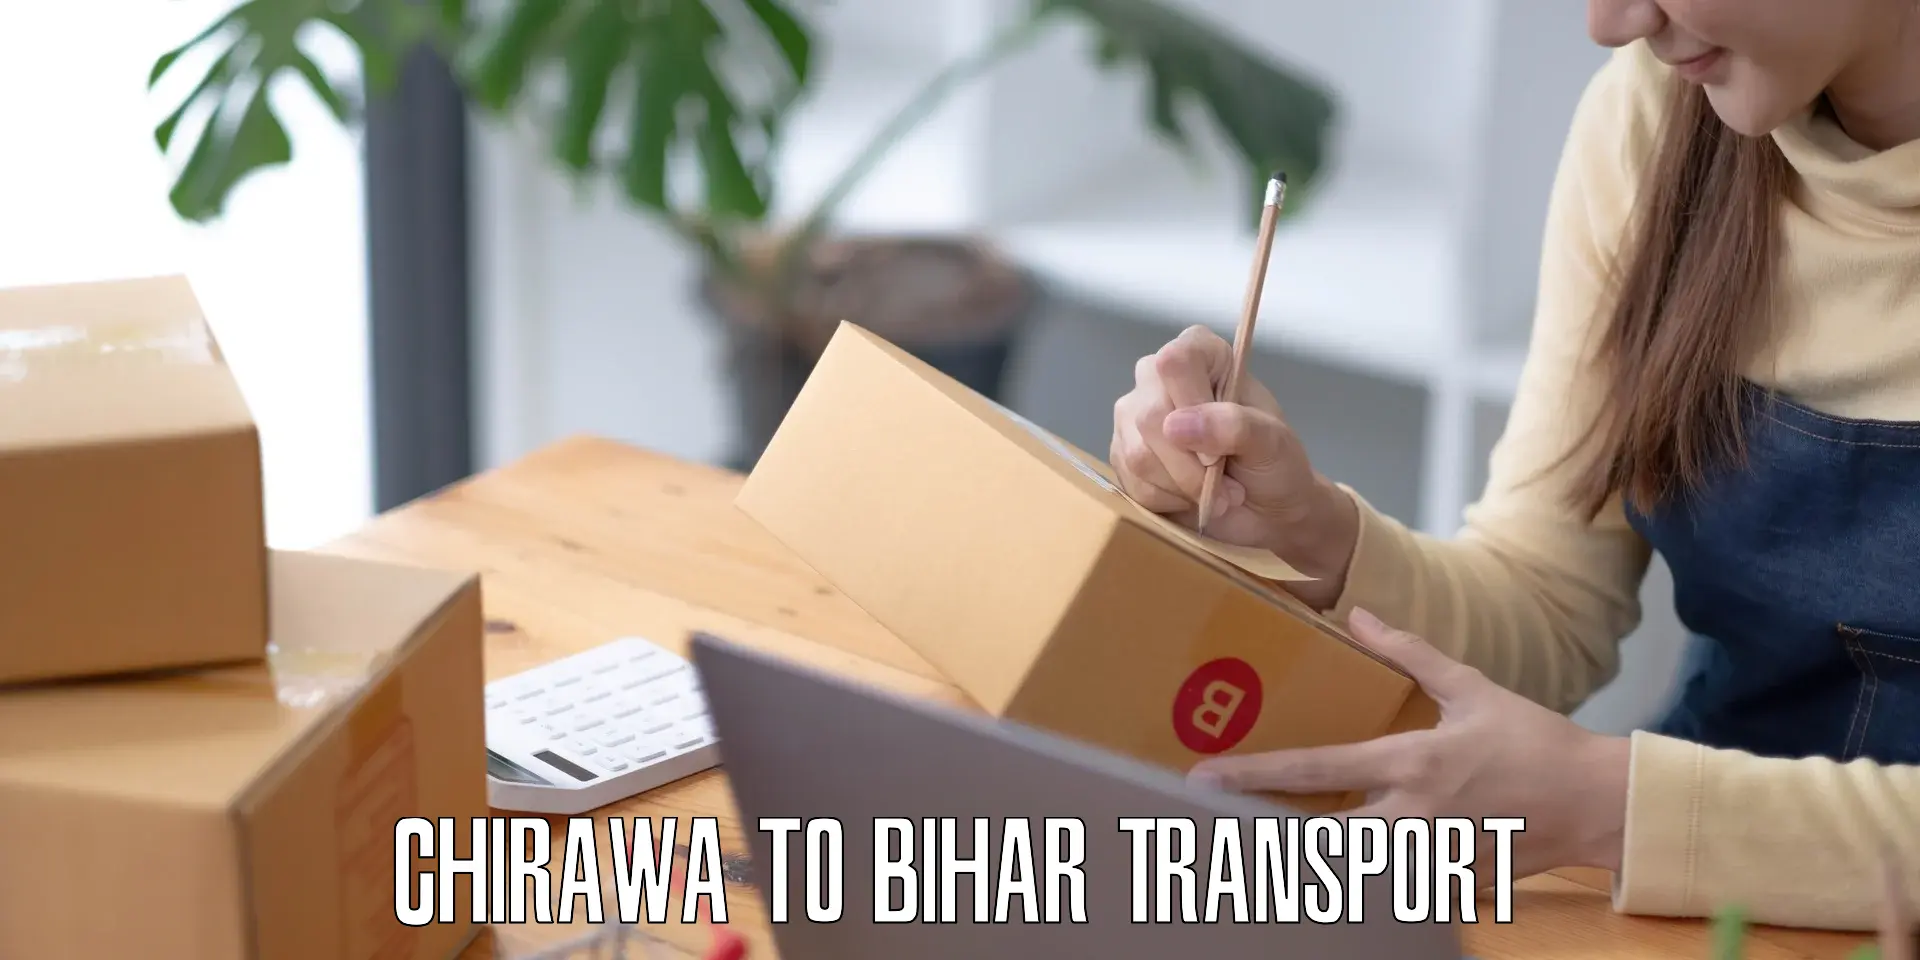 Shipping partner Chirawa to Bihar